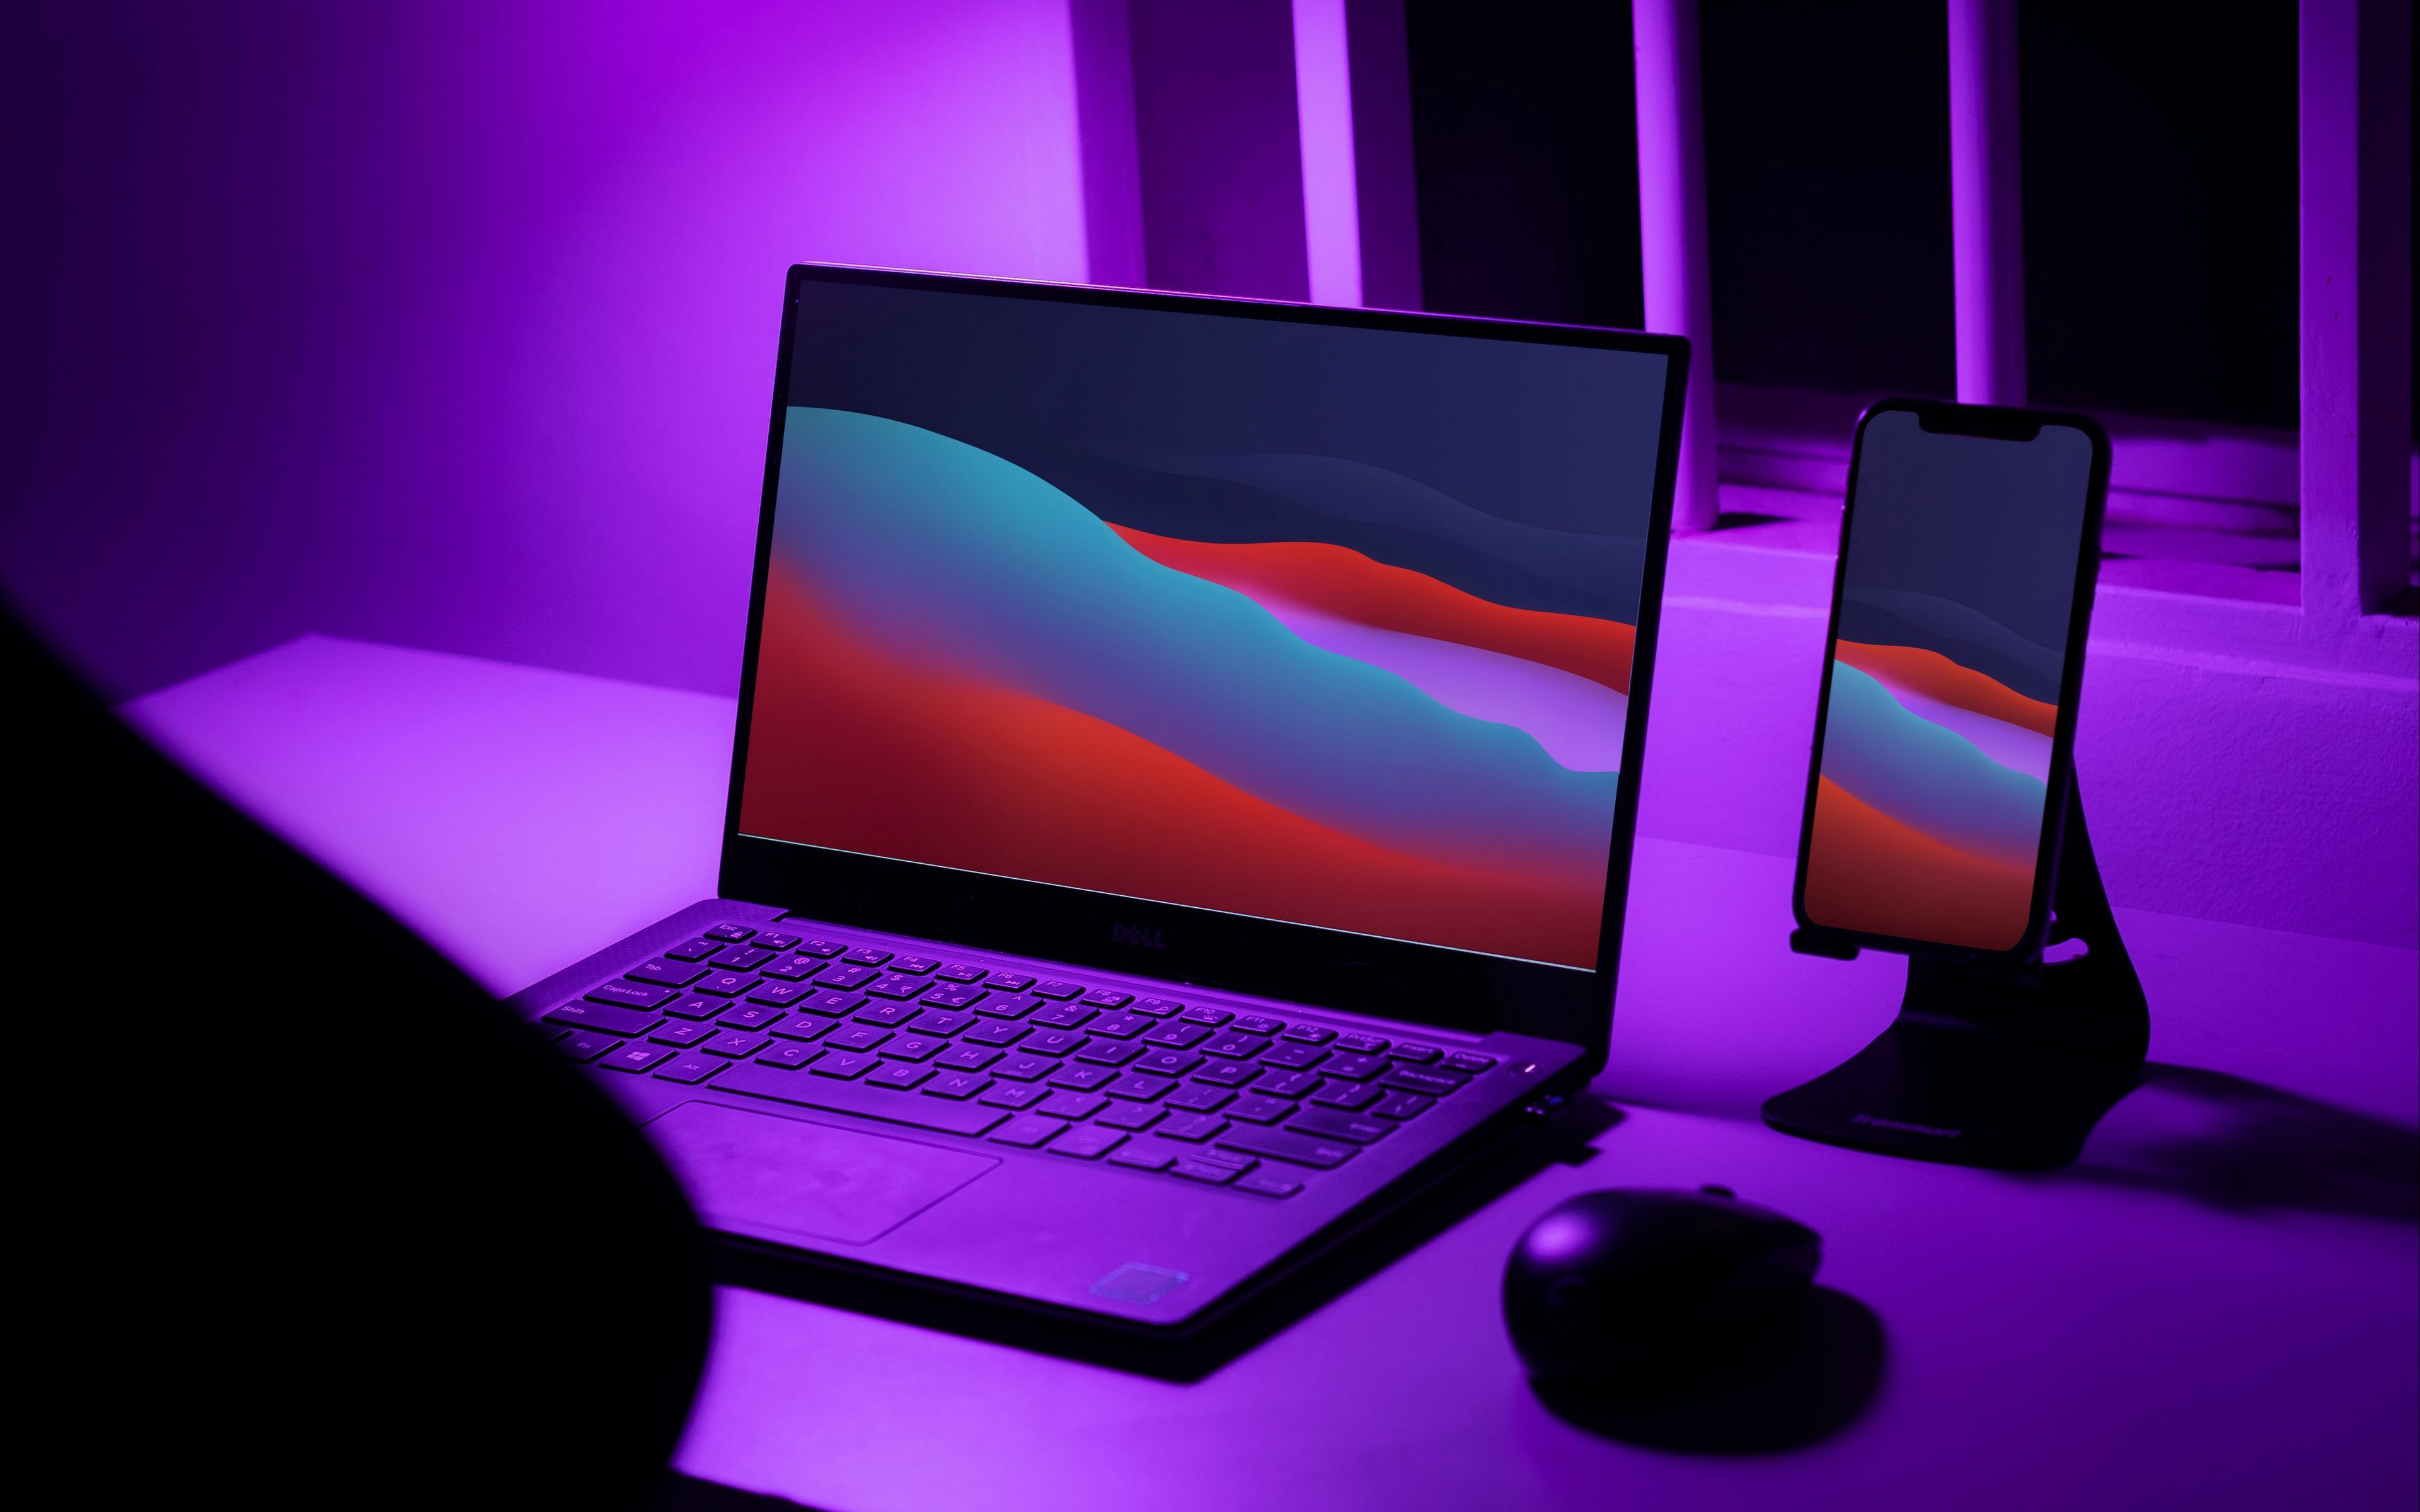 Download wallpaper 3840x2400 laptop, phone, desktop, neon, purple 4k ultra HD 16:10 HD background